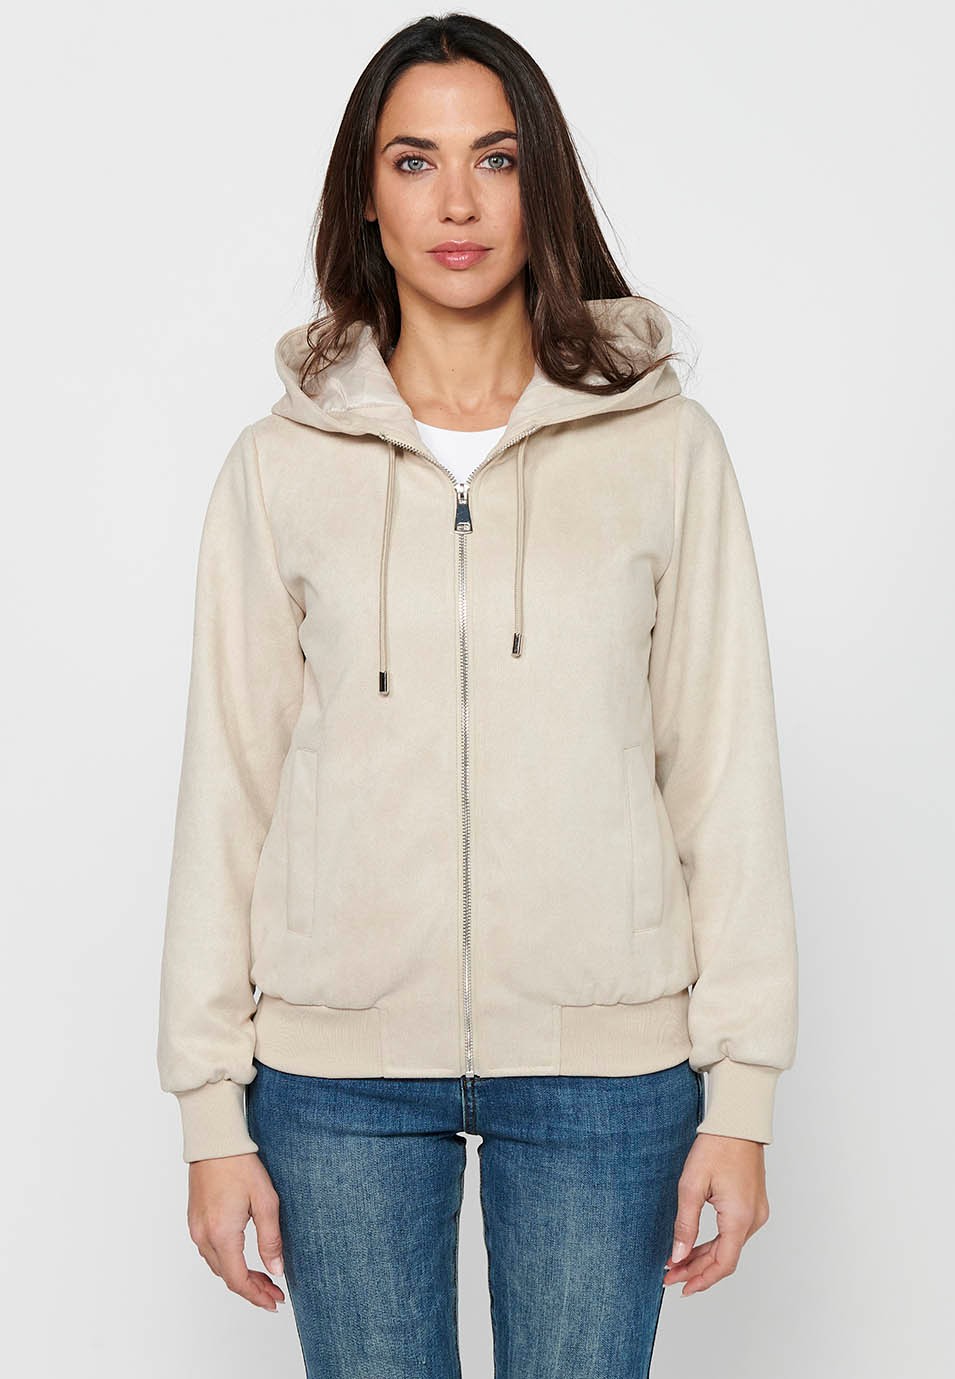 Women's Ecru Color Hooded Collar Long Sleeve Zip Front Closure Sweatshirt Jacket 2